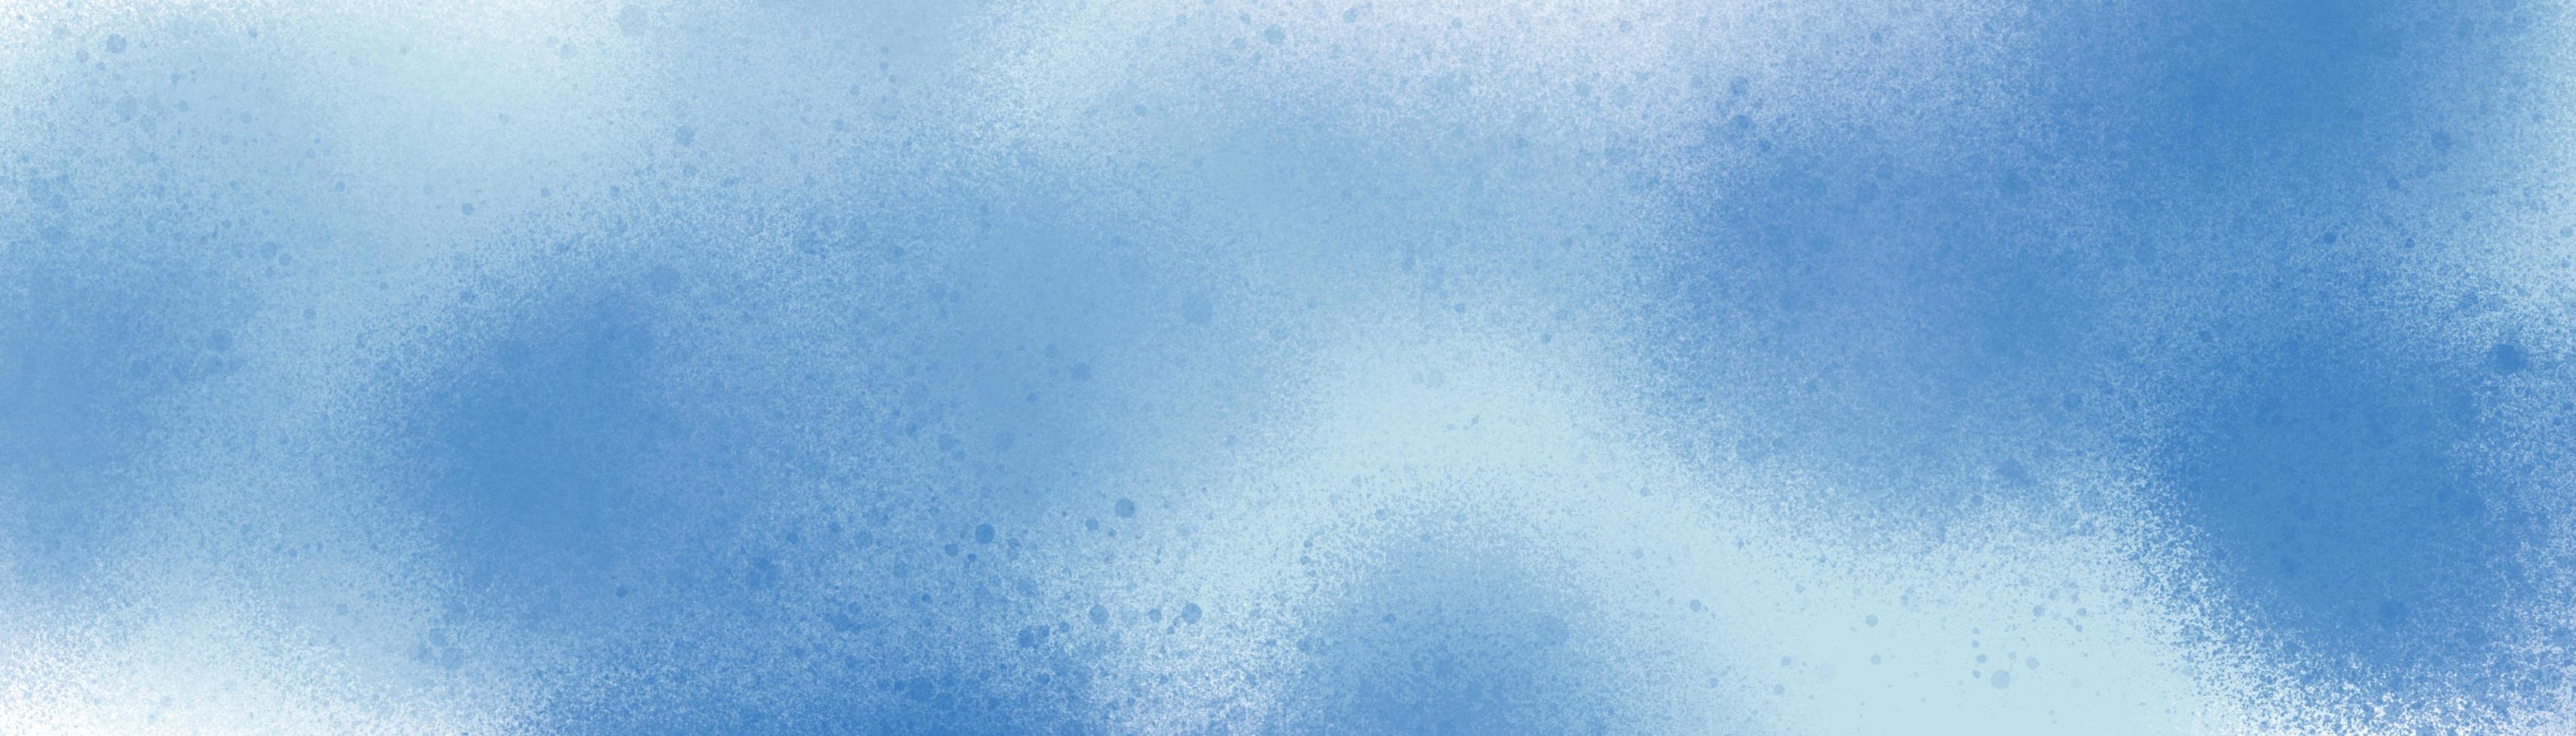 patrón de fondo abstracto salpicaduras-pincel pintado en colores de invierno. azul y blanco en elementos de textura de puntos para el diseño creativo. foto